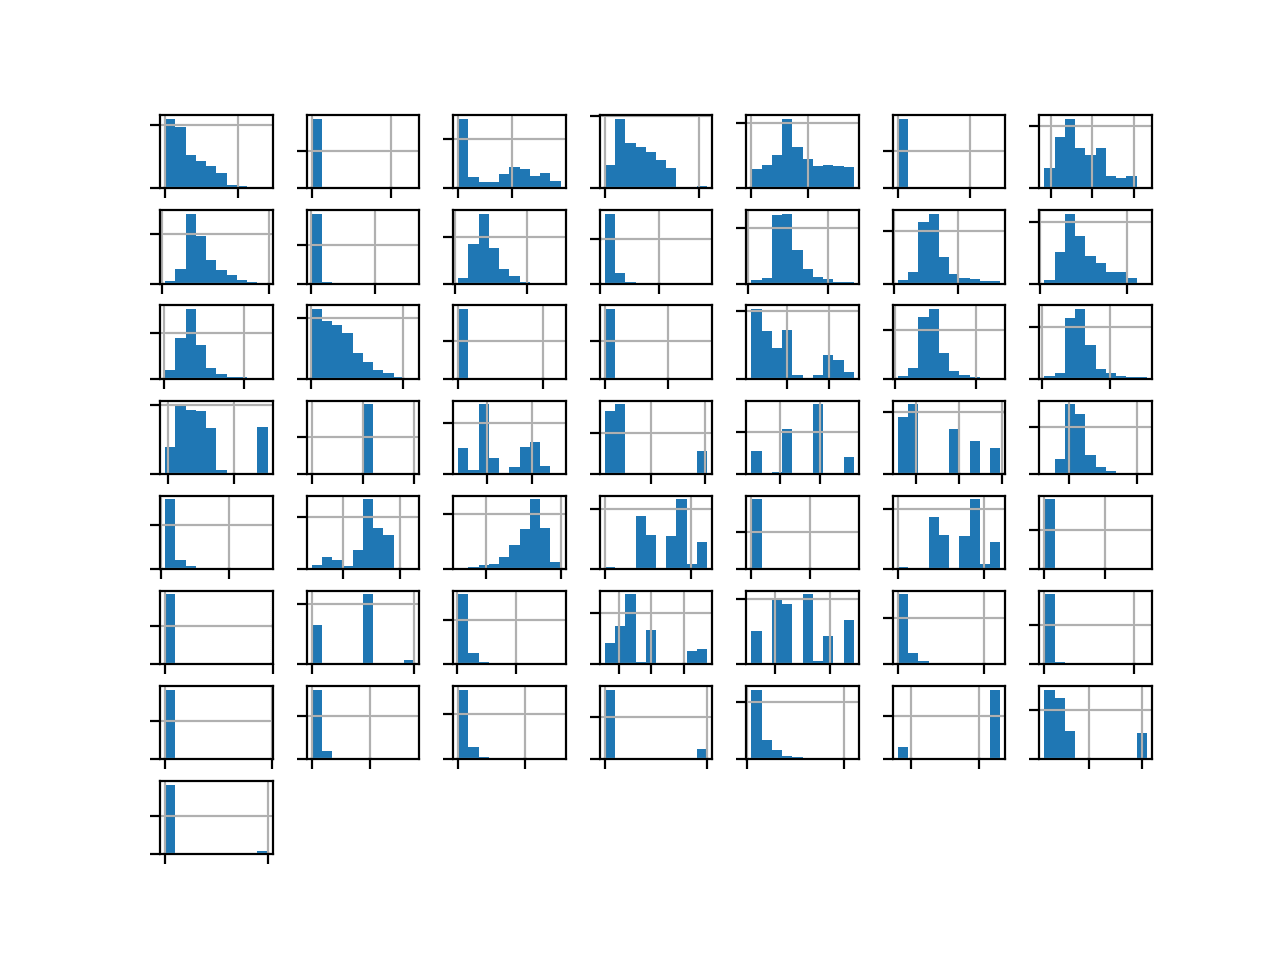 Histogram of Each Variable in the Oil Spill Dataset